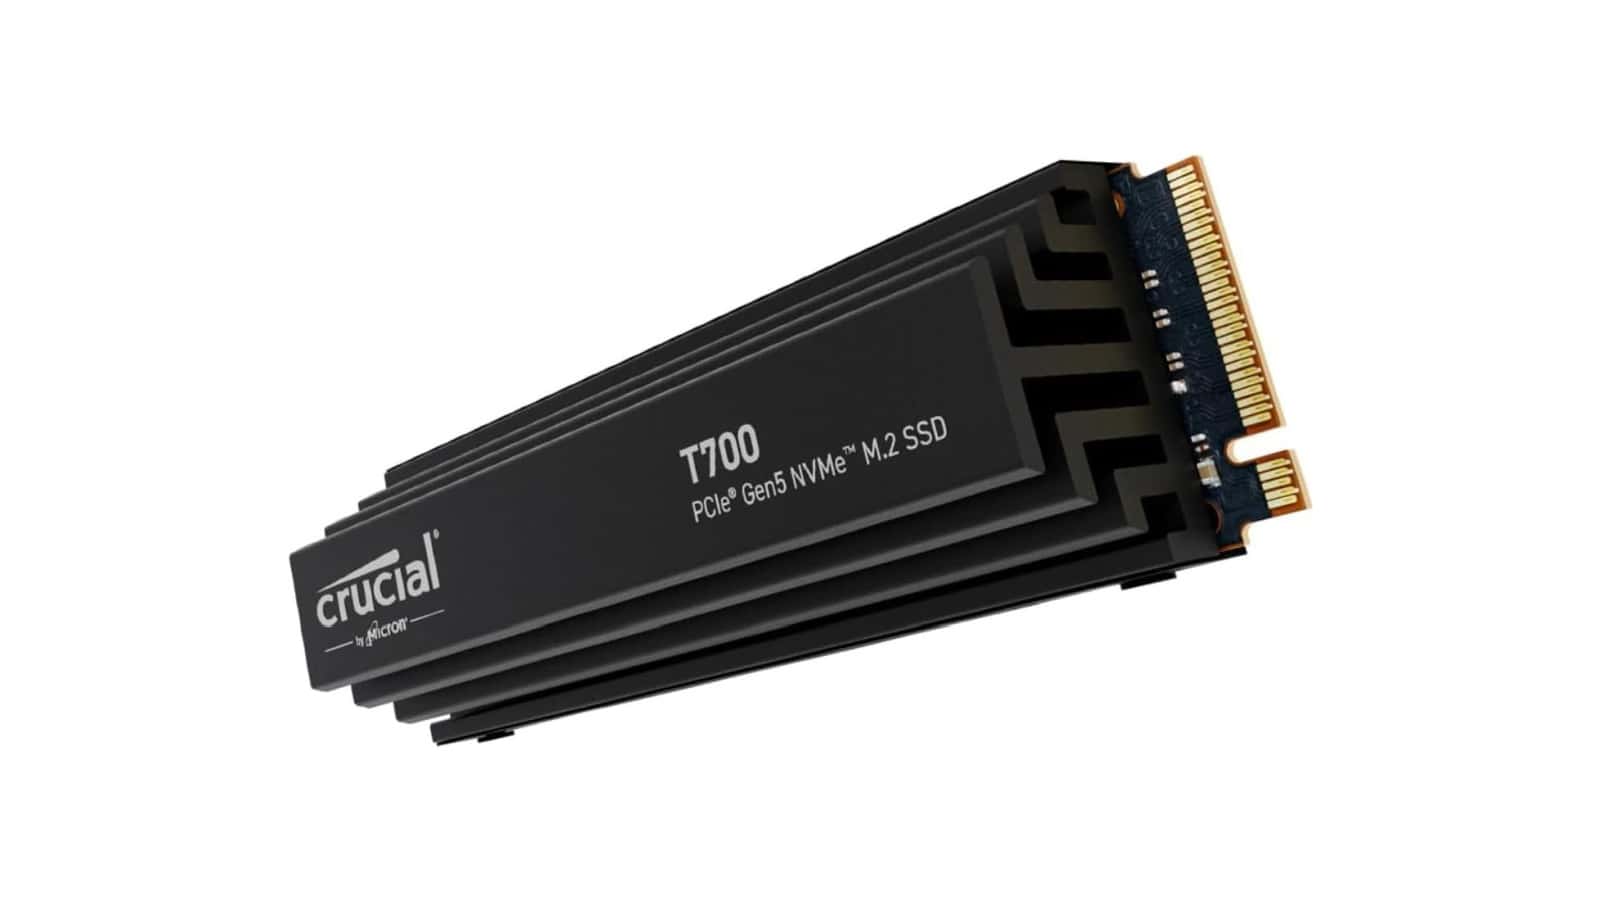 Obtenga 1 TB de almacenamiento con el SSD Crucial T700, ahora rebajado a $168